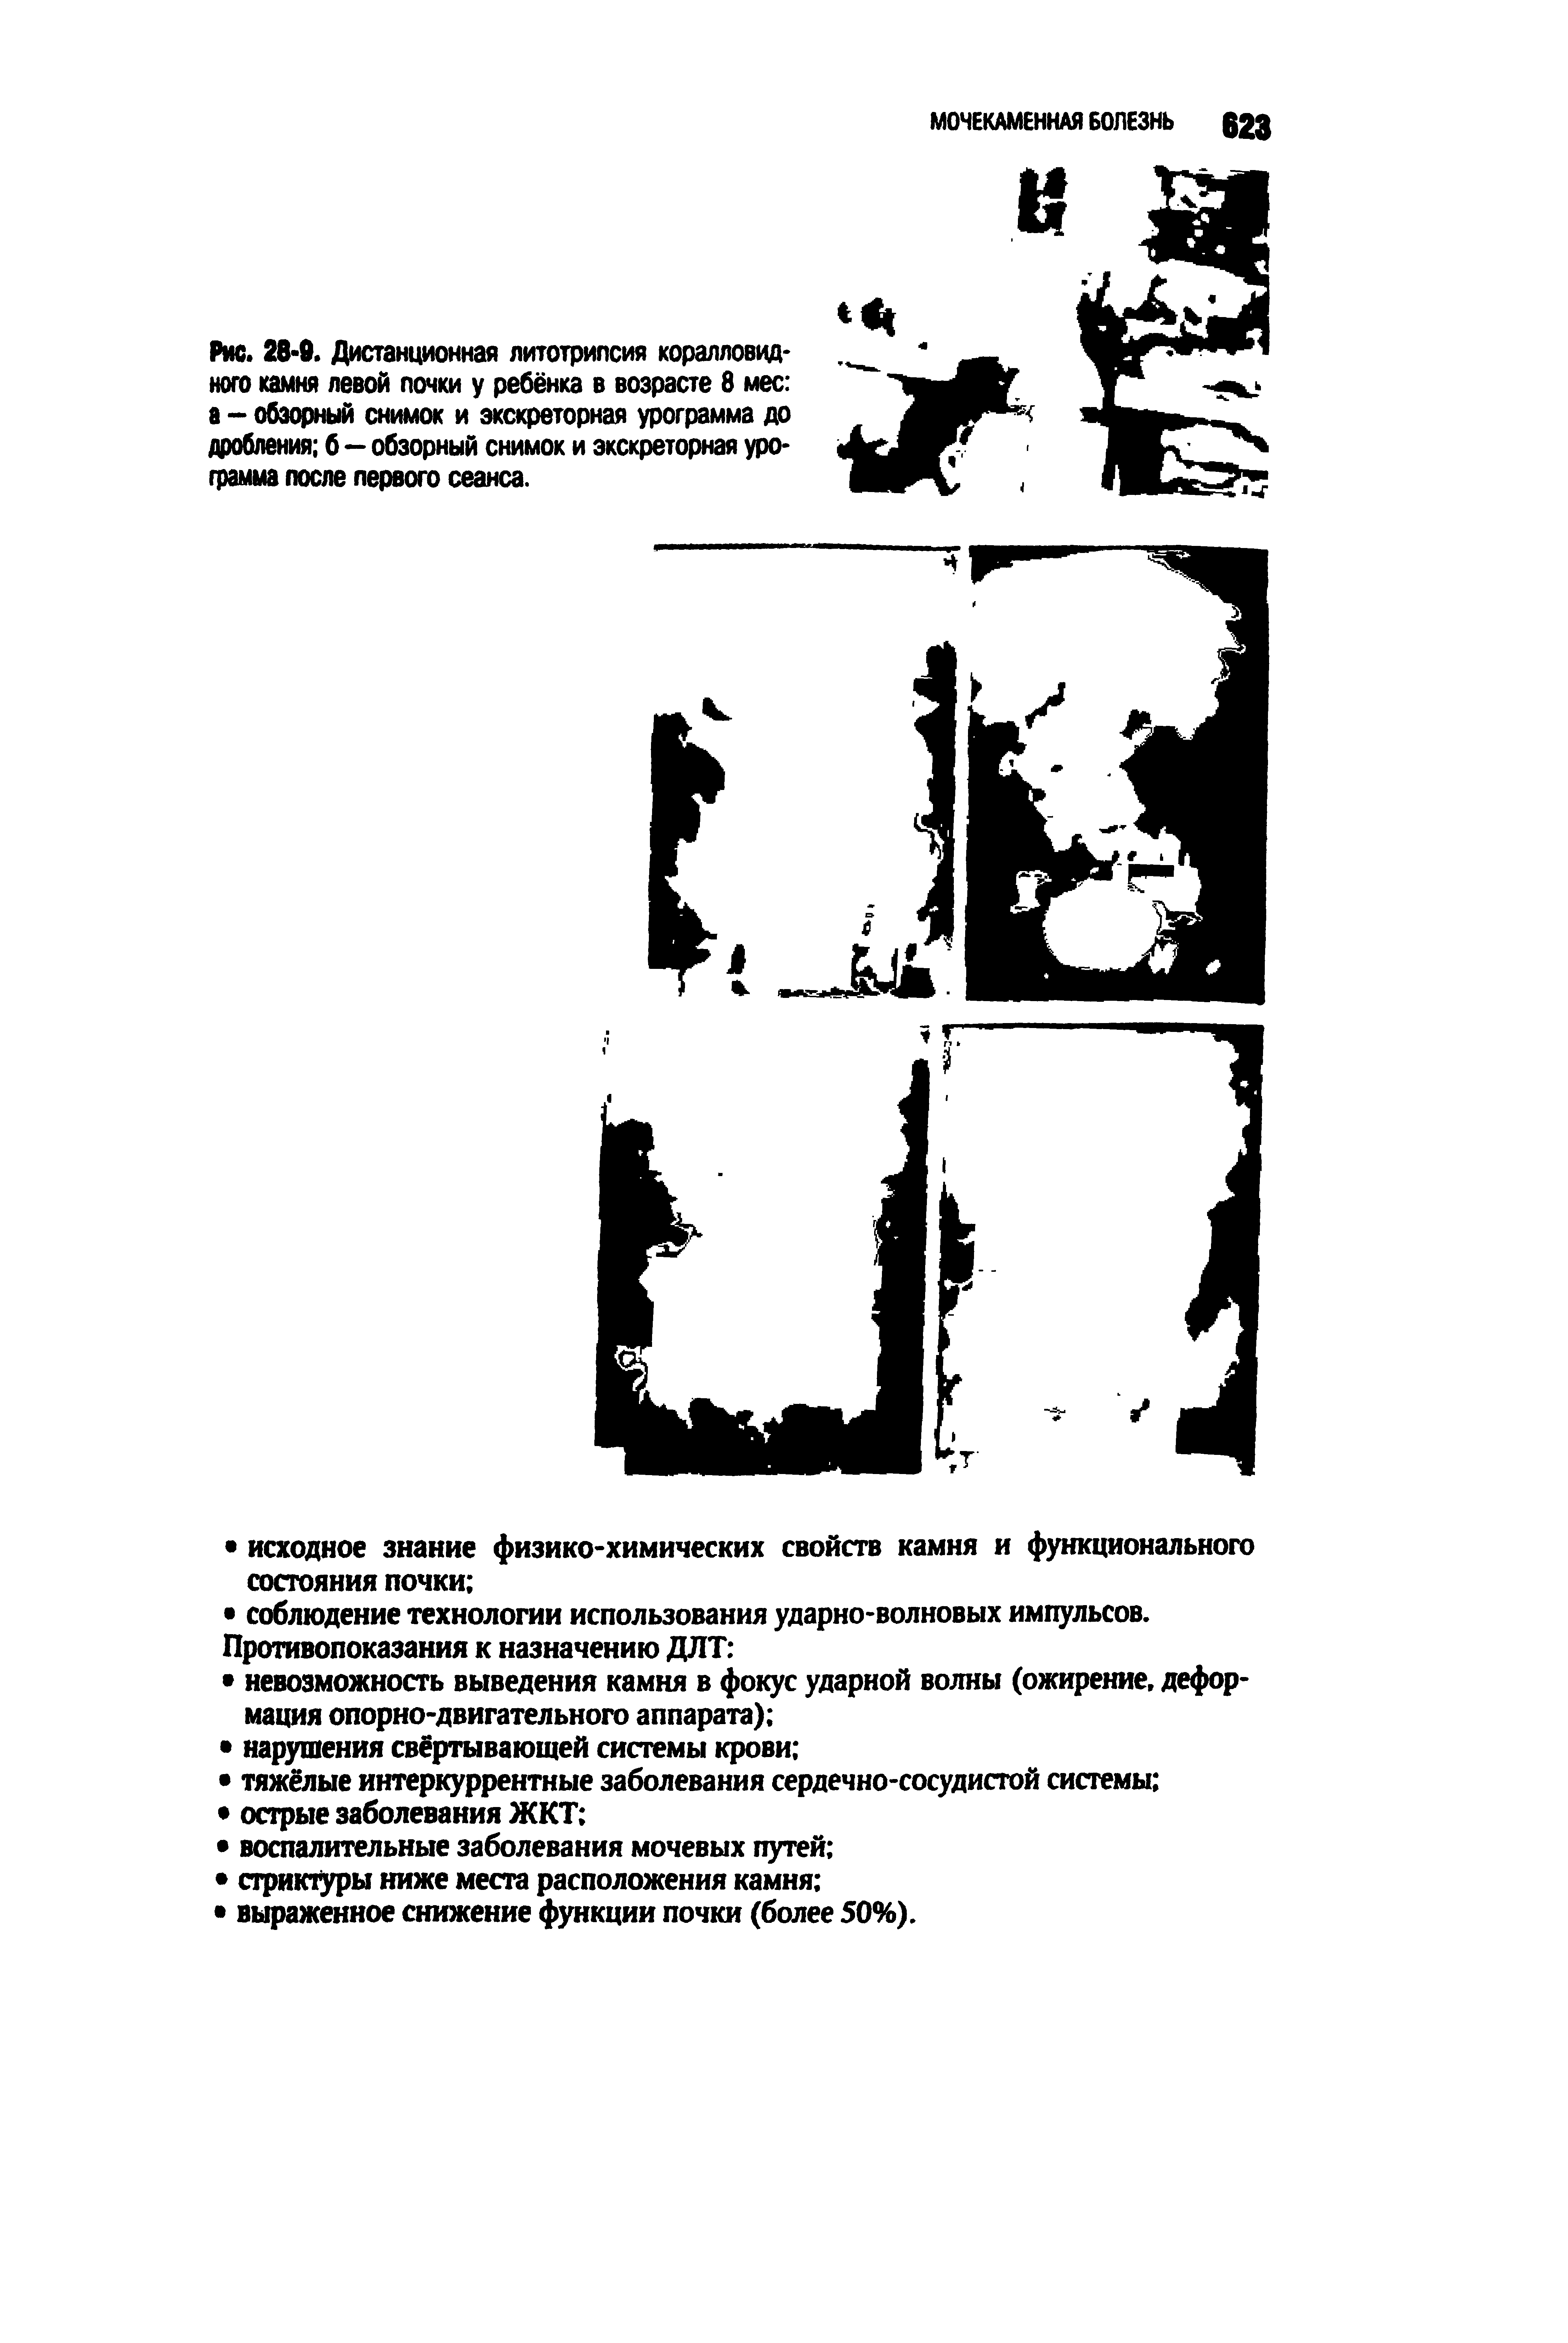 Рис. 28-0. Дистанционная литотрипсия коралловидного камня левой почки у ребёнка в возрасте 8 мес а - обзорный снимок и экскреторная урограмма до дробления б—обзорный снимок и экскреторная урограмма после первого сеанса.